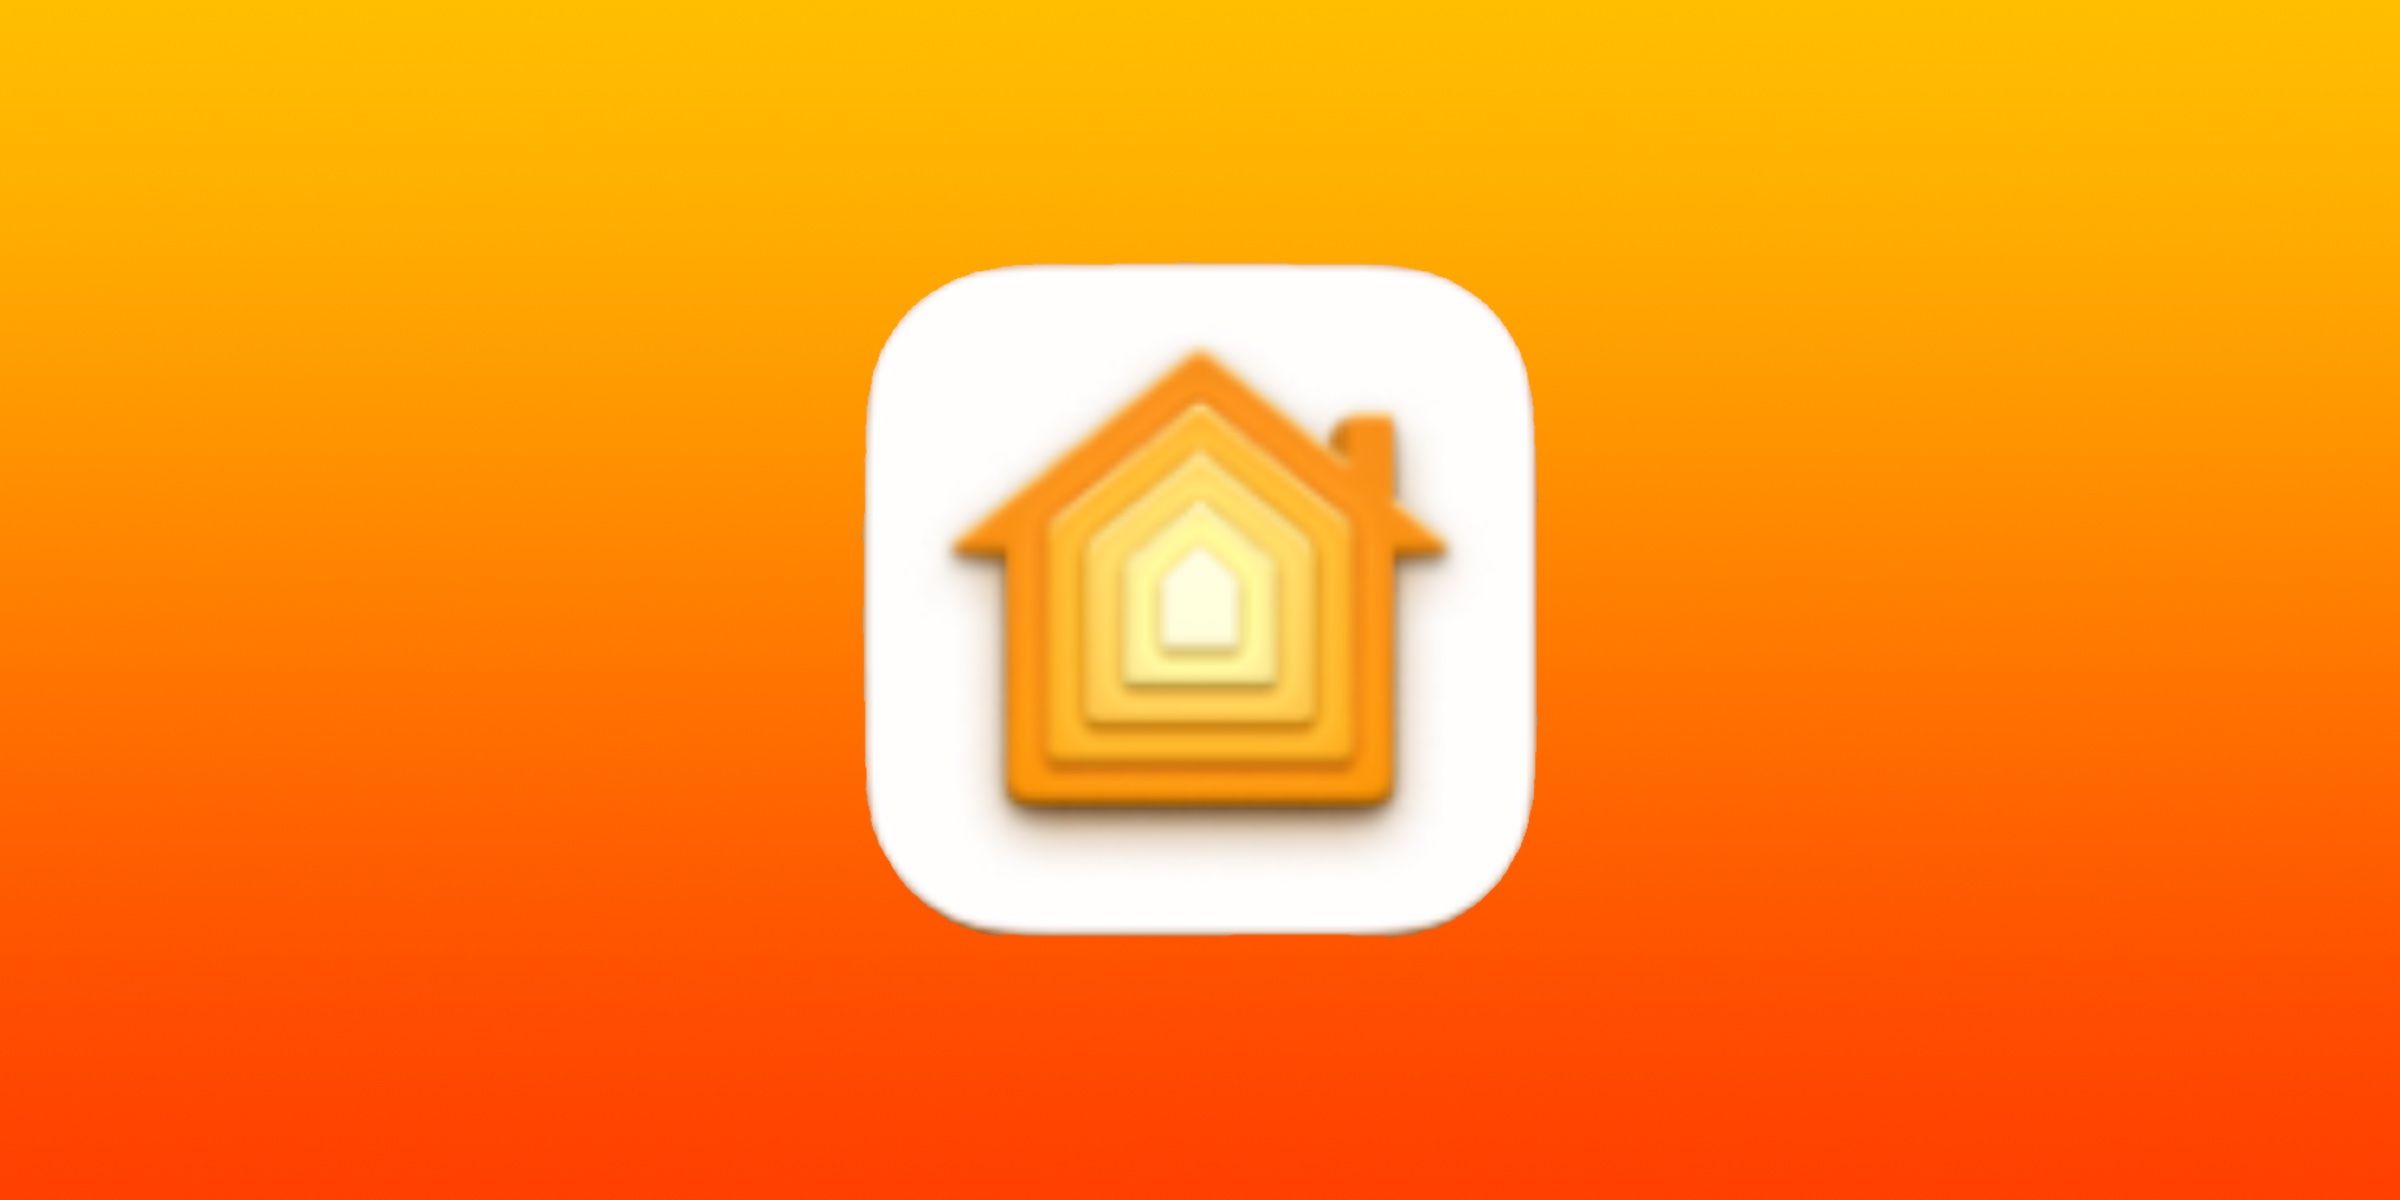 Icône de l'application Home d'Apple sur fond dégradé orange et jaune.